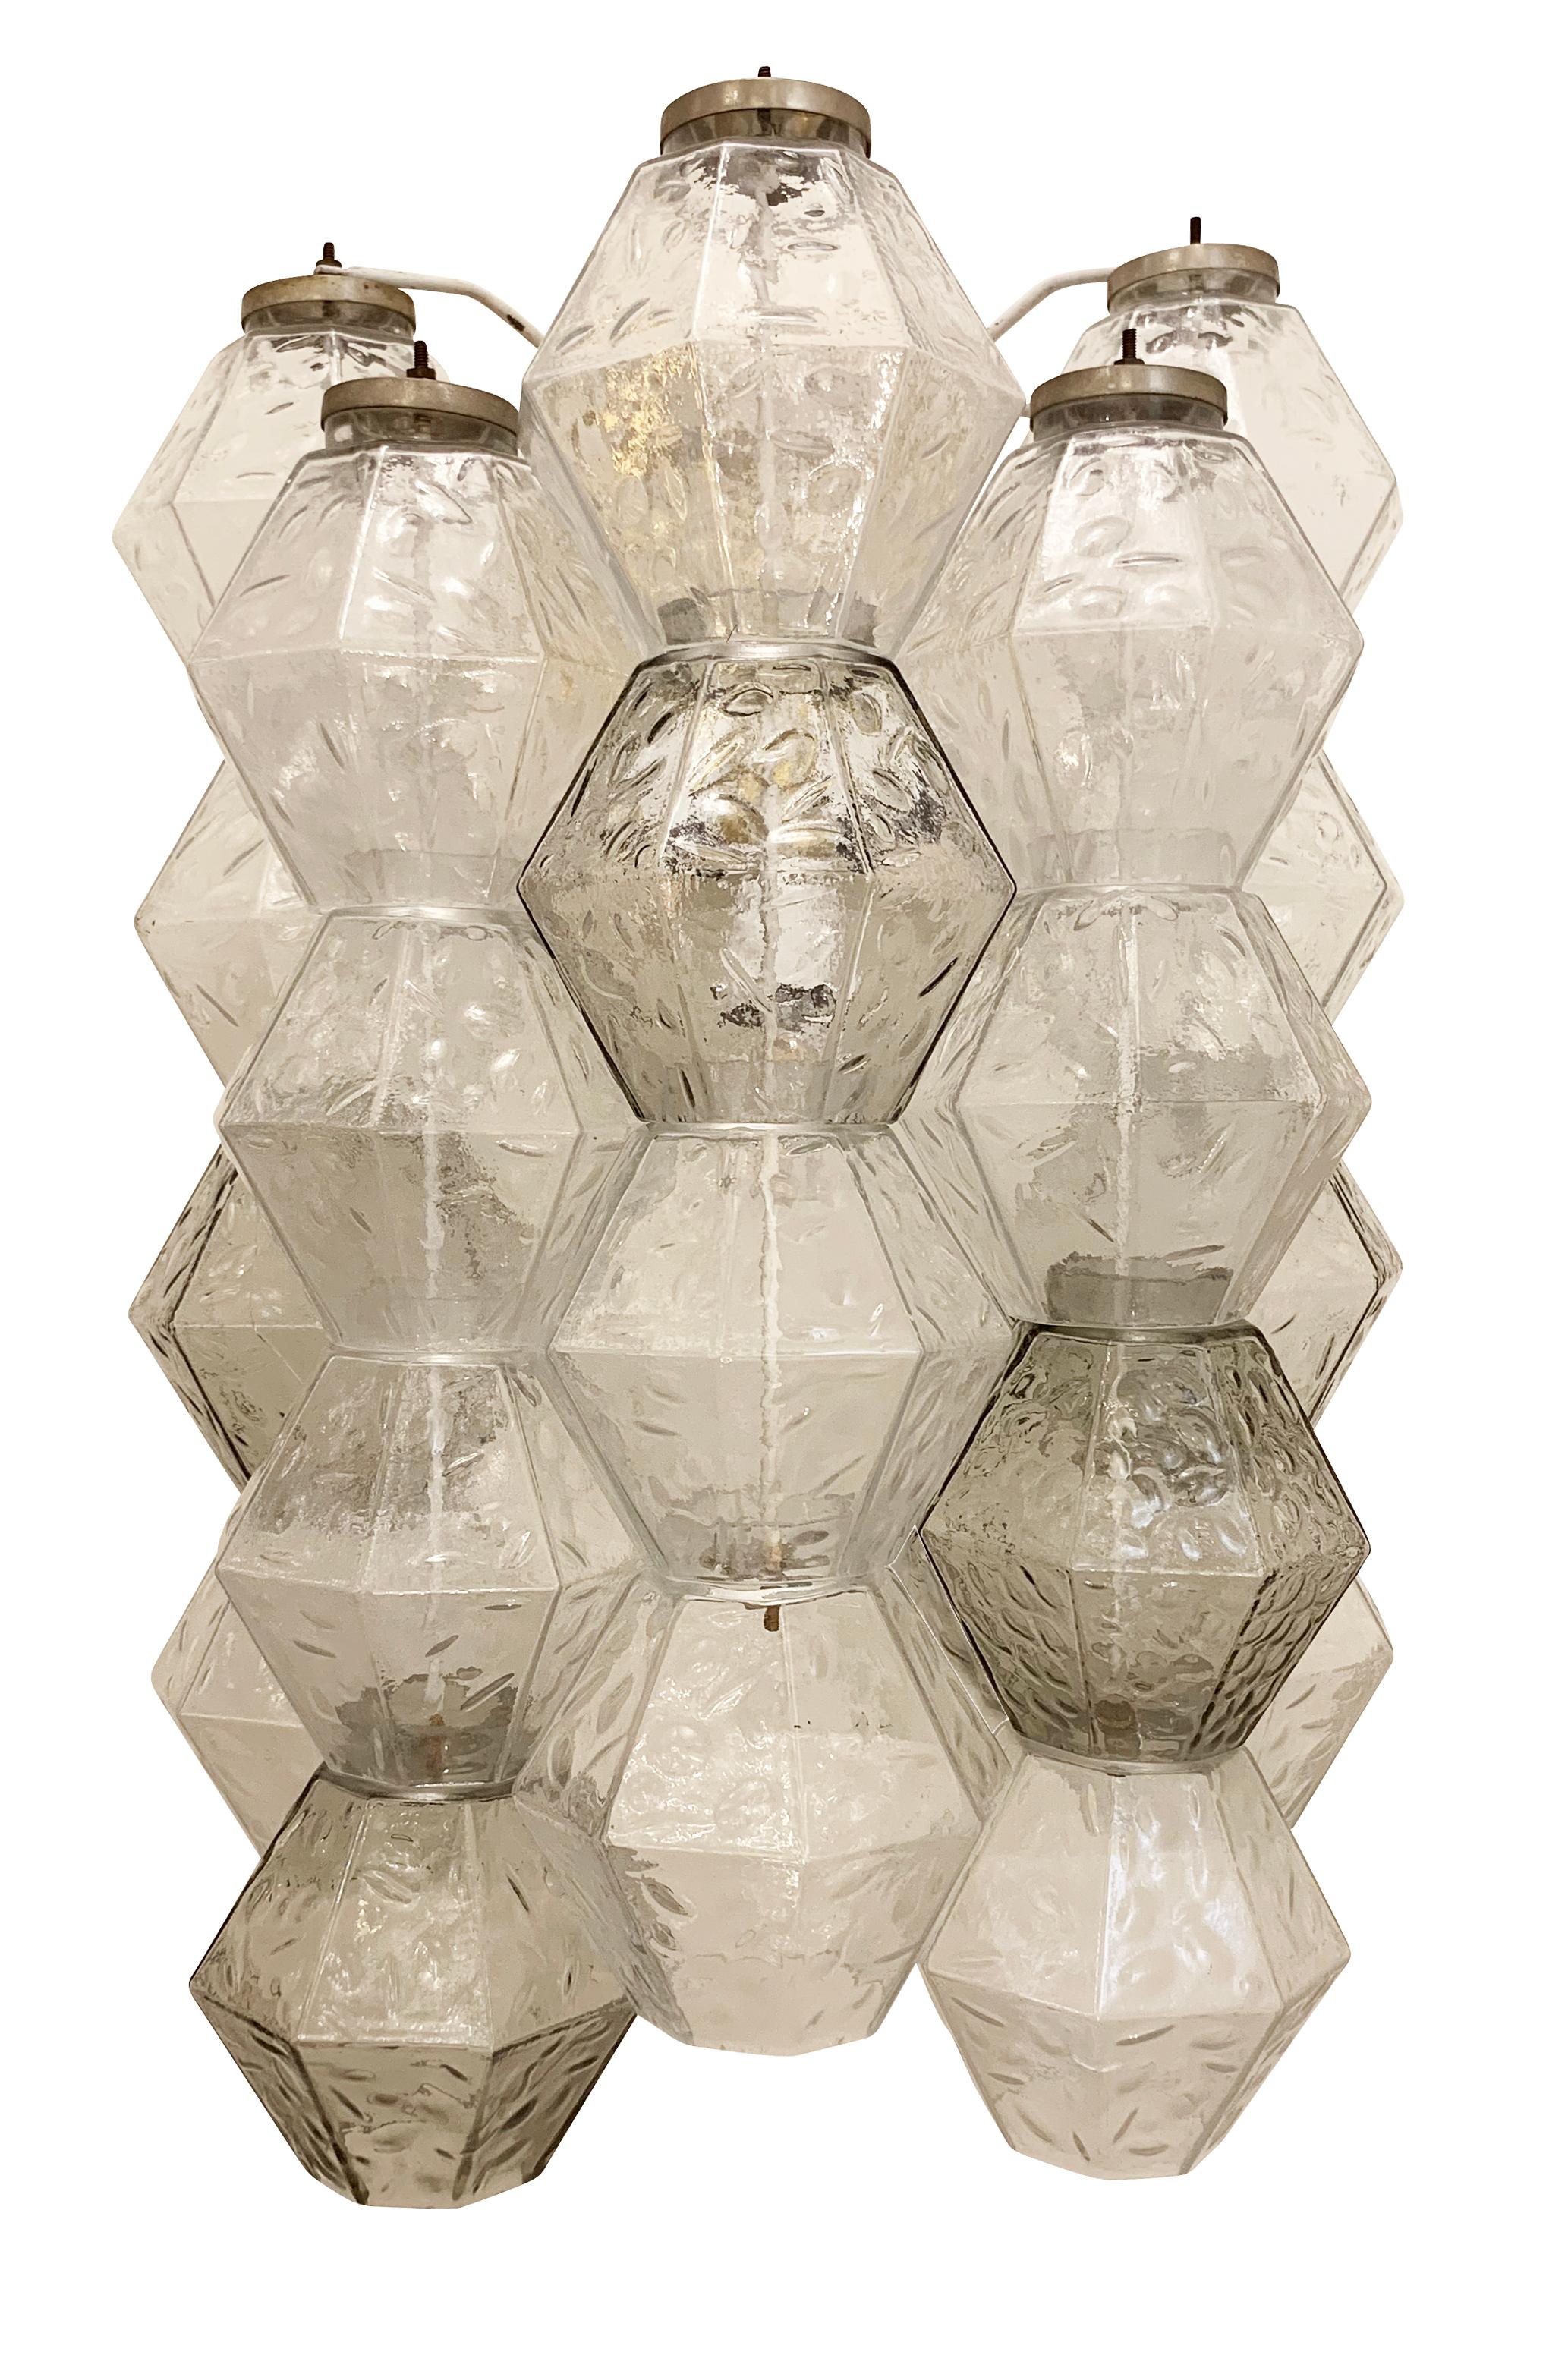 Ein Paar Wandleuchten aus Glas von Salviati aus den 1960er Jahren.  Jede besteht aus einer Mischung aus klaren und grauen mundgeblasenen Komponenten auf einem Metallrahmen.

Zustand: Ausgezeichneter Vintage-Zustand, leichte Abnutzungserscheinungen